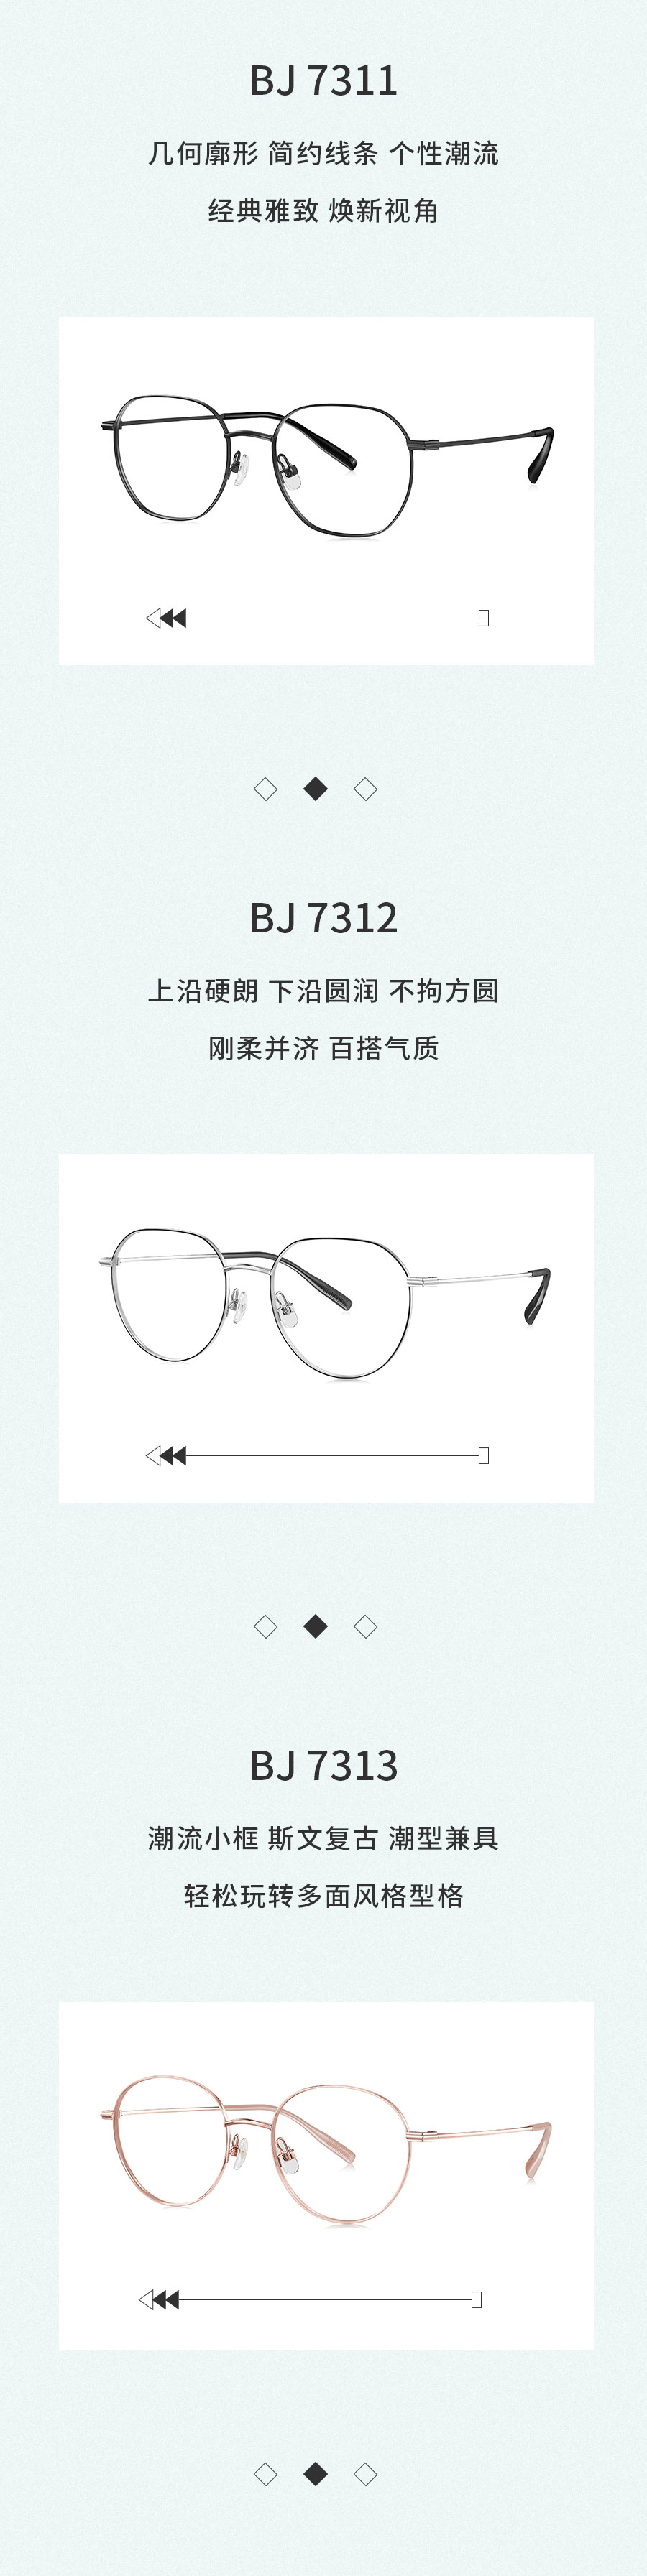 广信眼镜×BOLON暴龙联名款王俊凯同款复古圆框光学镜架BJ7313